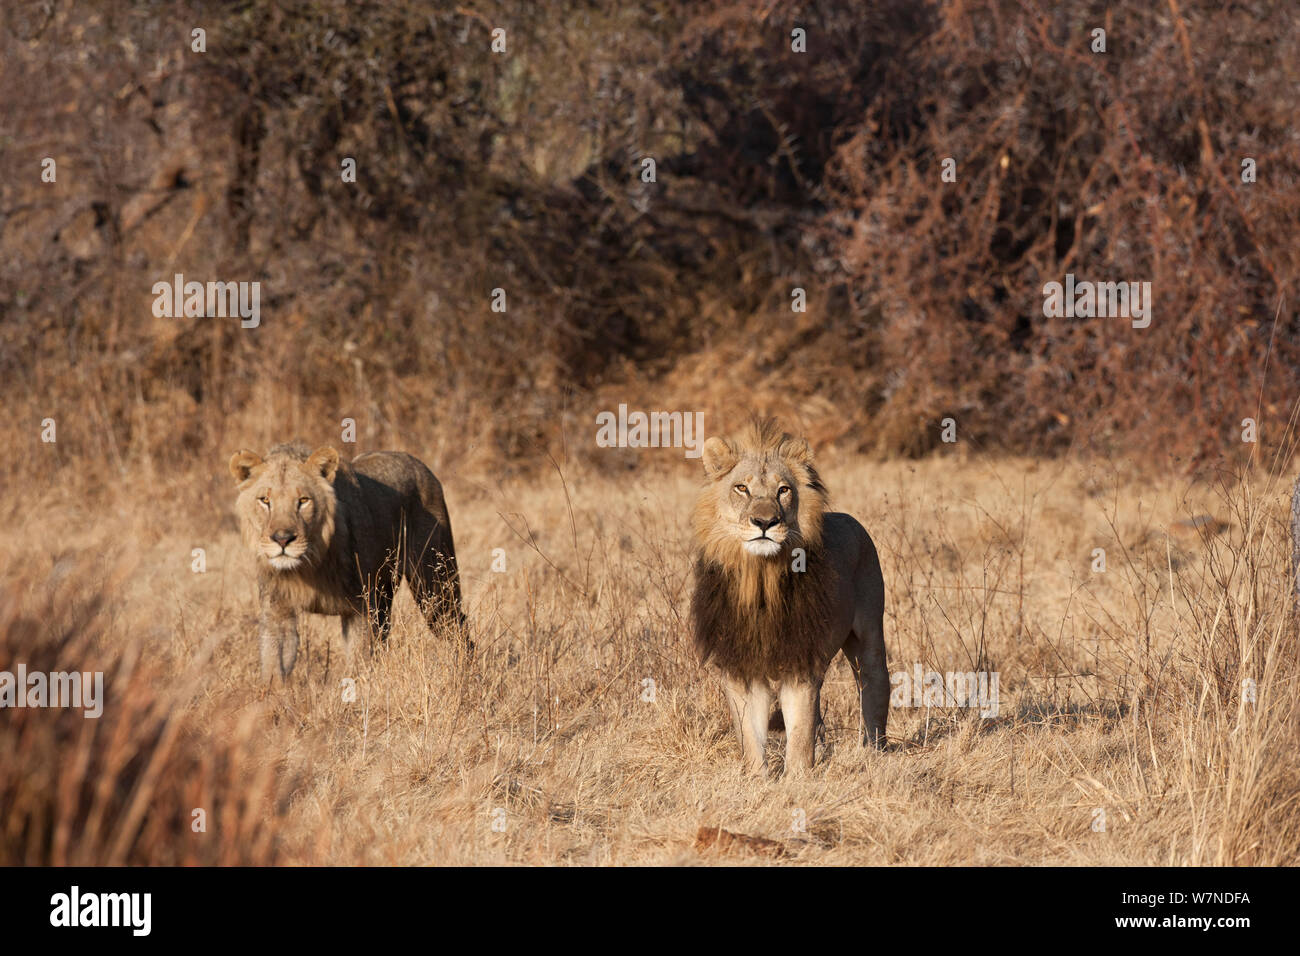 Lionne unique (Panthera leo) femelle avec une crinière ressemblant à celui d'un homme d'alerte permanent, Mombo, Moremi, chef de l'Île, Okavango Delta, Botswana. Banque D'Images